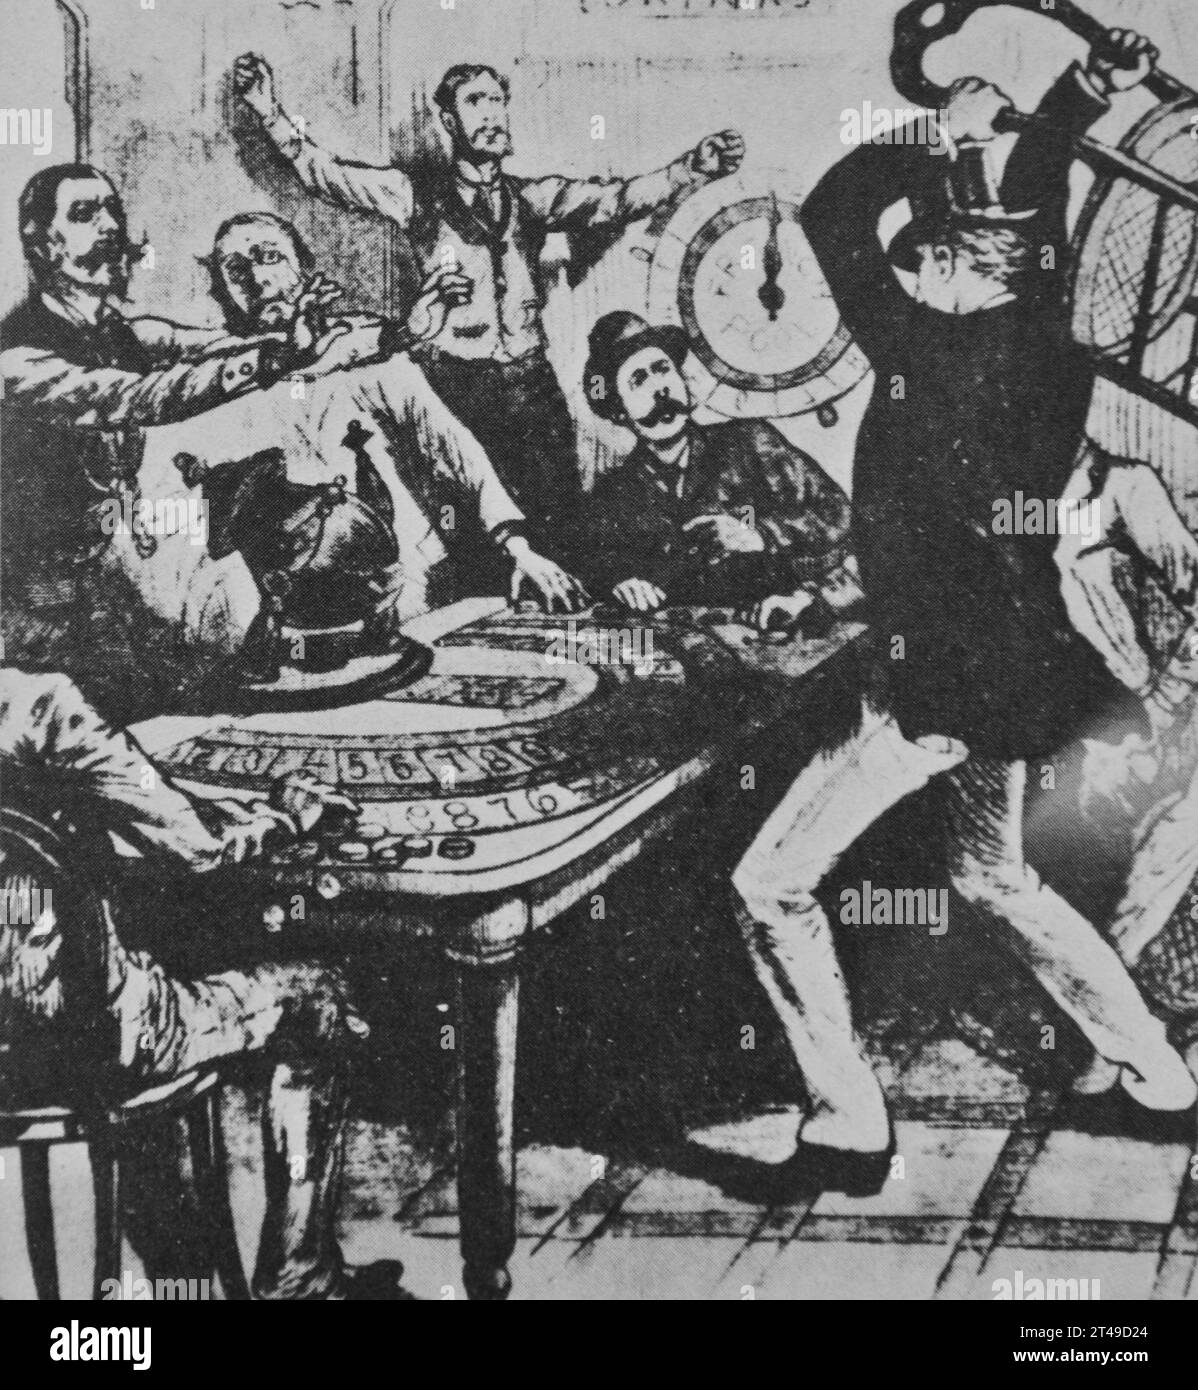 Zeichnung aus dem 19. Jahrhundert. Szene, die einen wütenden Spieler zeigt, nachdem er ein Spiel verloren hat. Er nimmt seine Wut auf dem Spieltisch aus, während die Zuschauer schockiert reagieren. Stockfoto